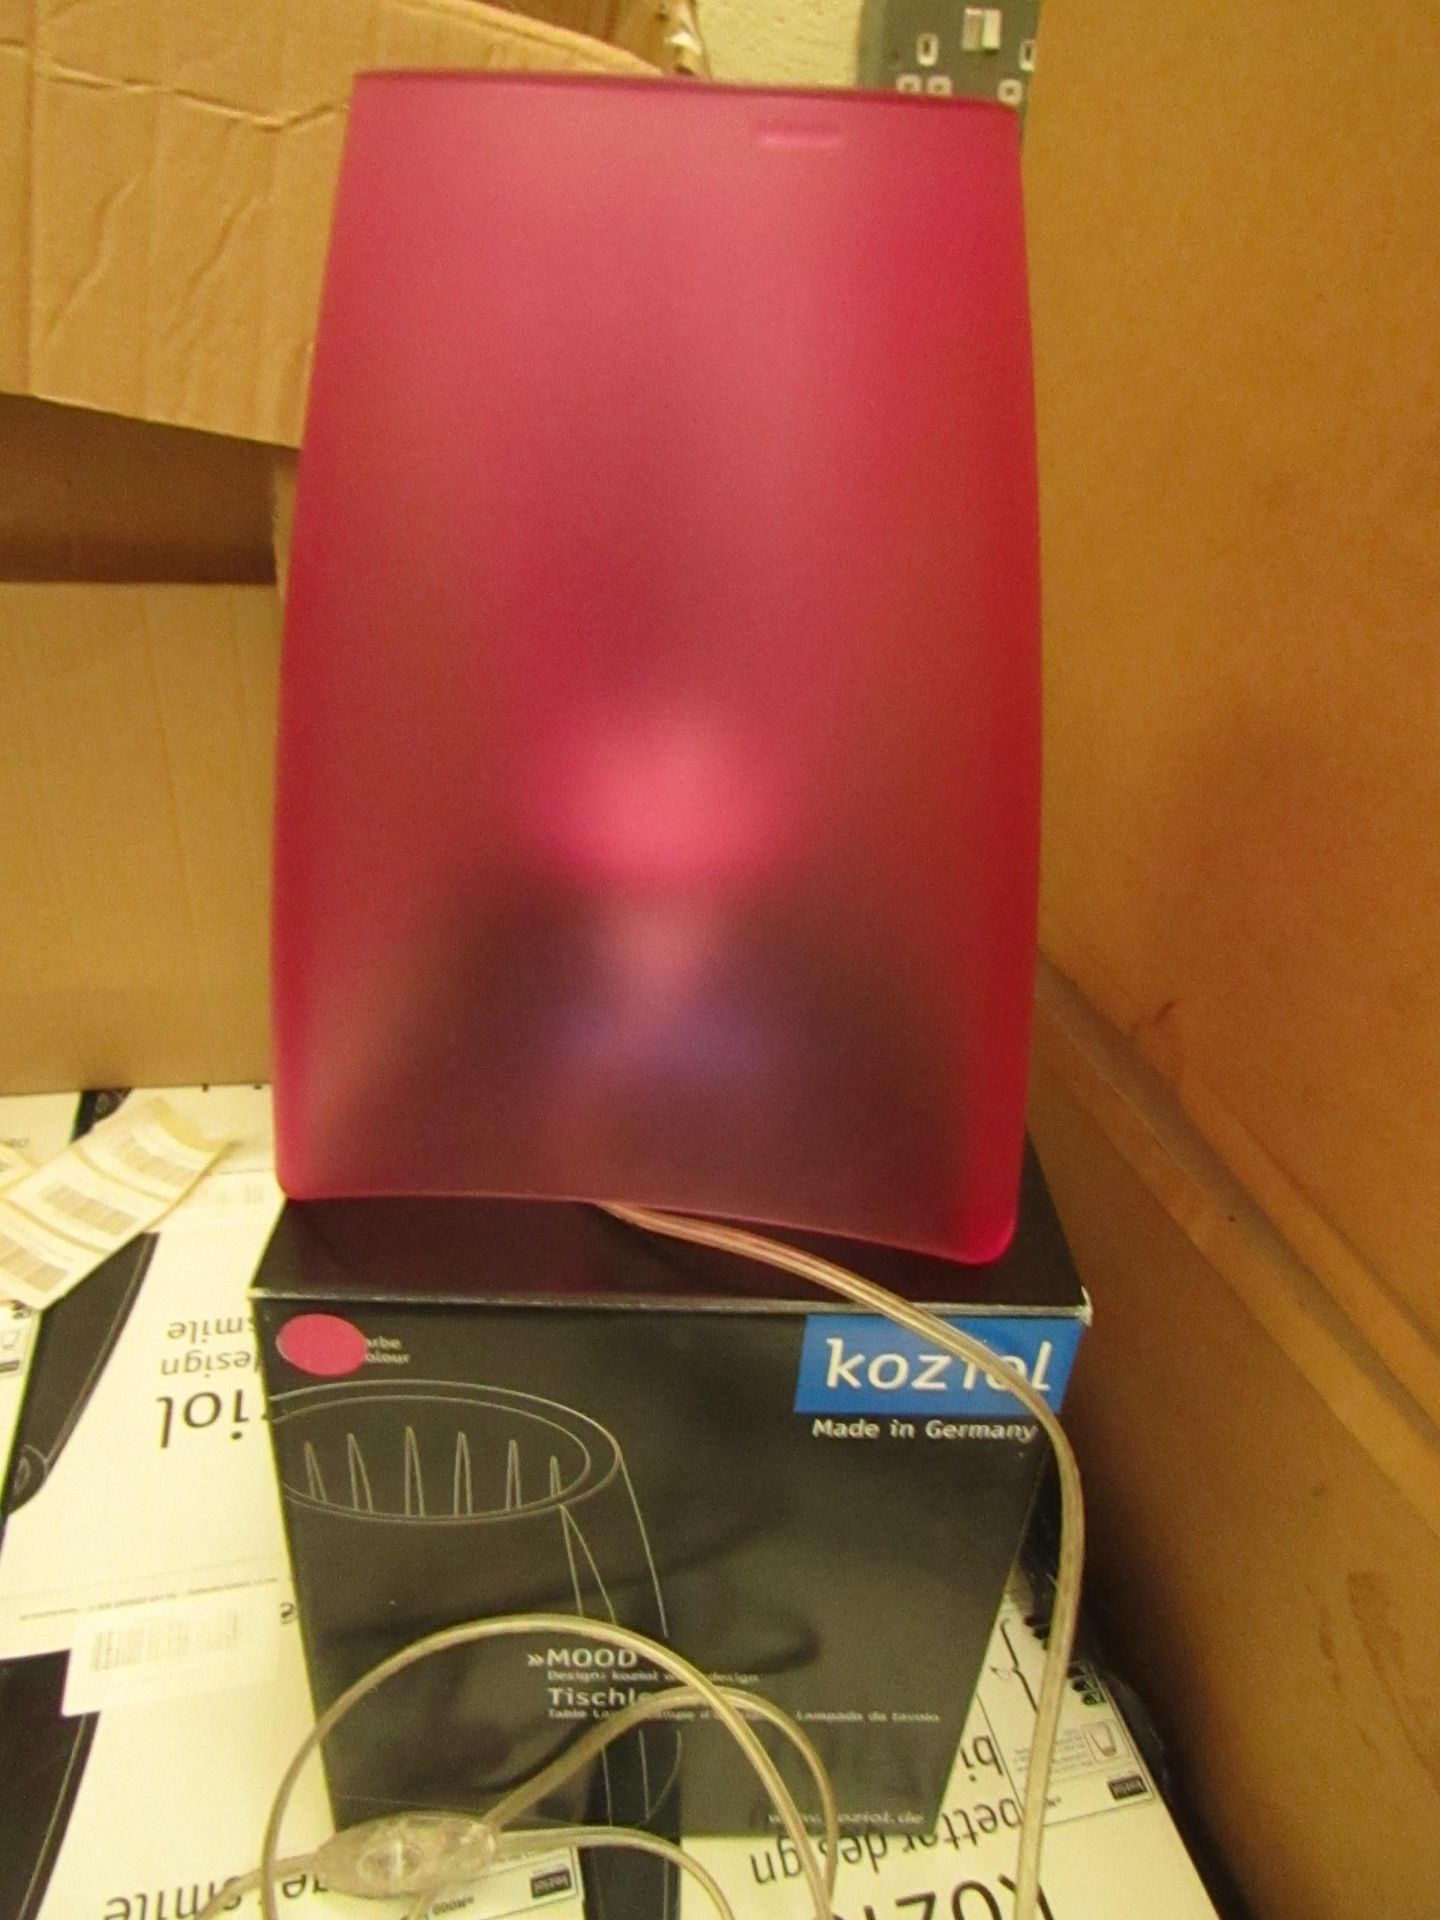 Koziol Mood table lamp, unused and boxed. EU plug